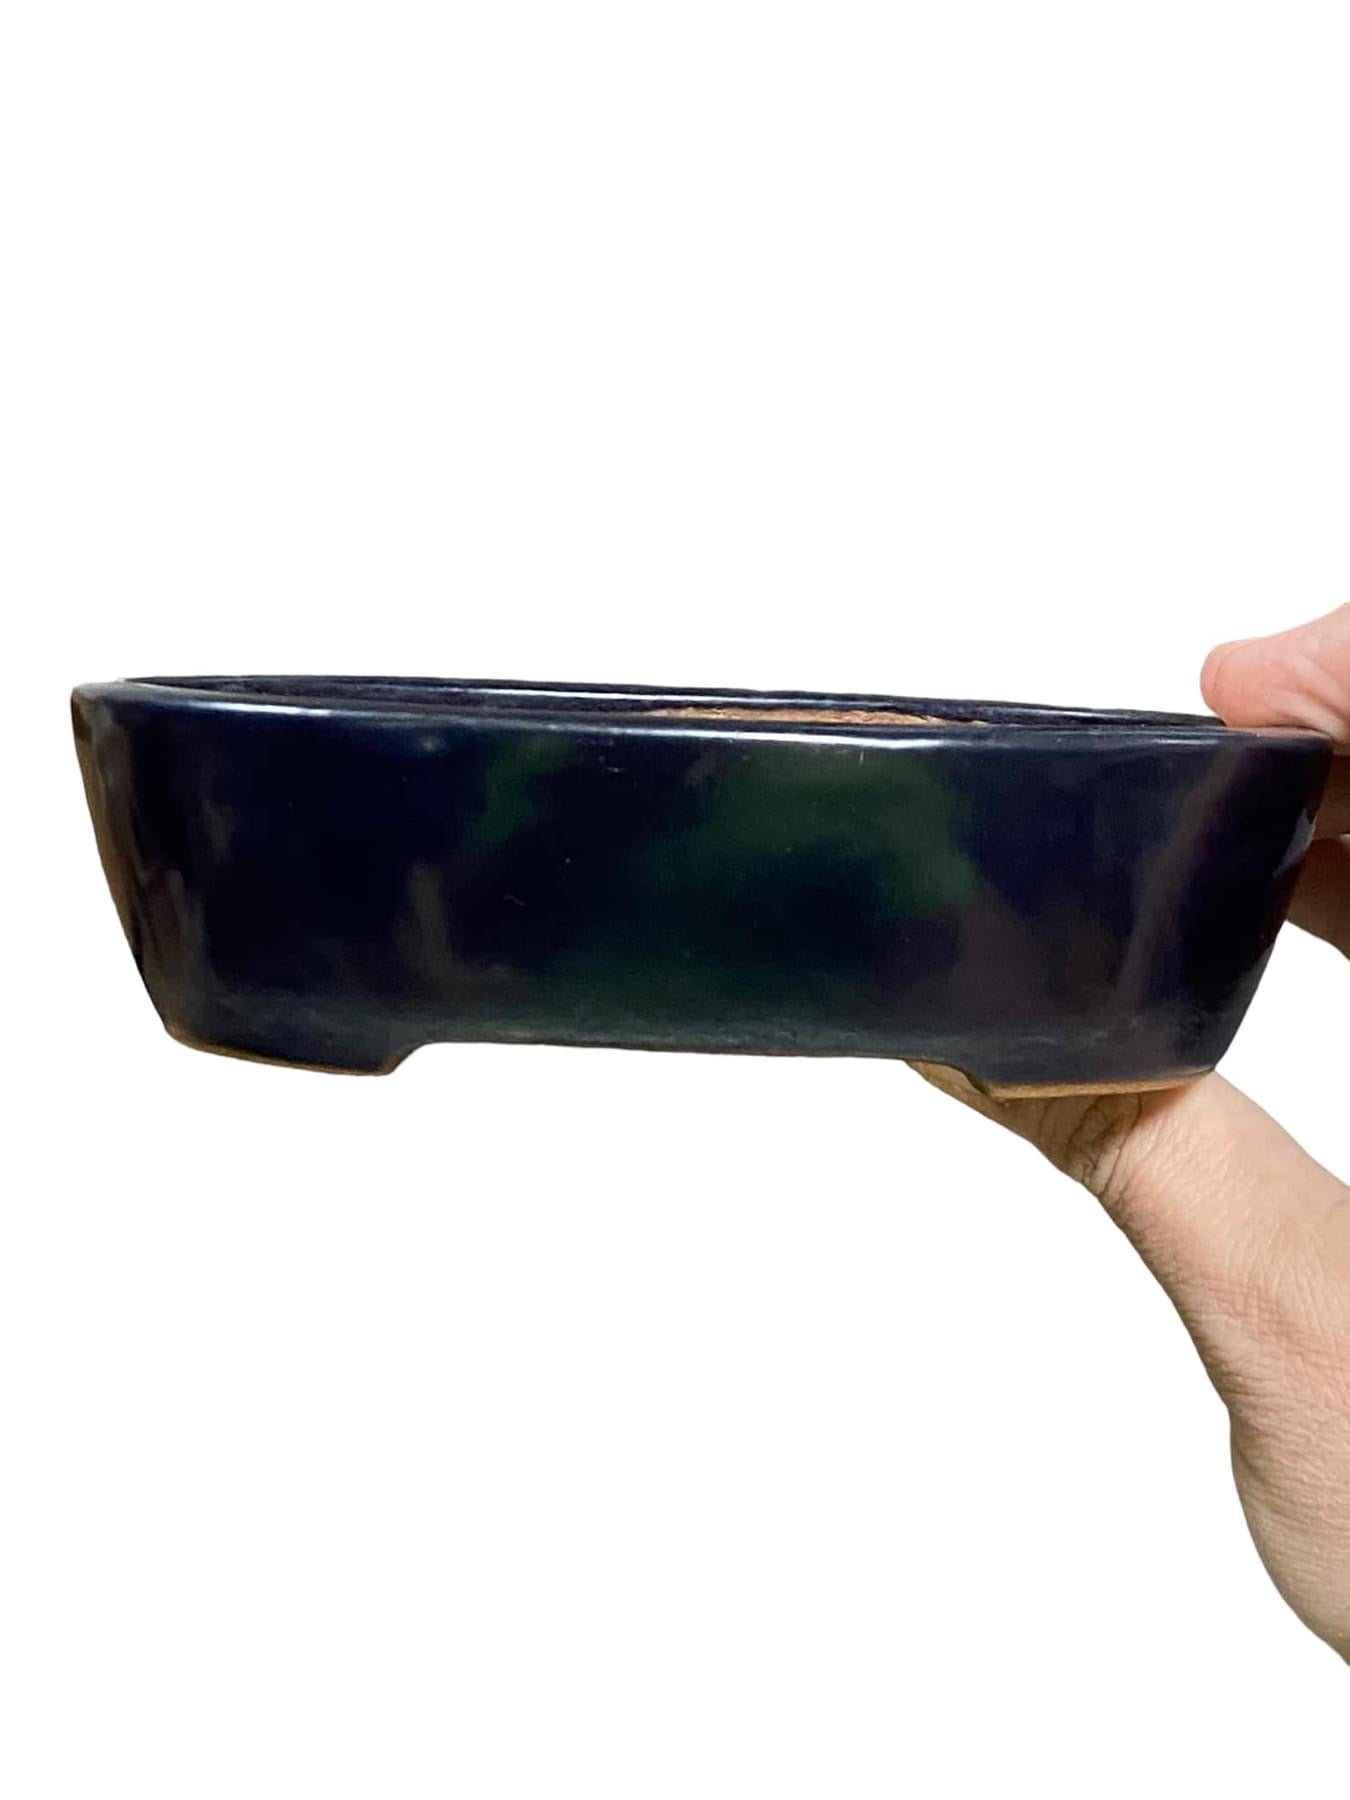 Housyu - Ruri Blue Glazed Oval Bonsai Pot